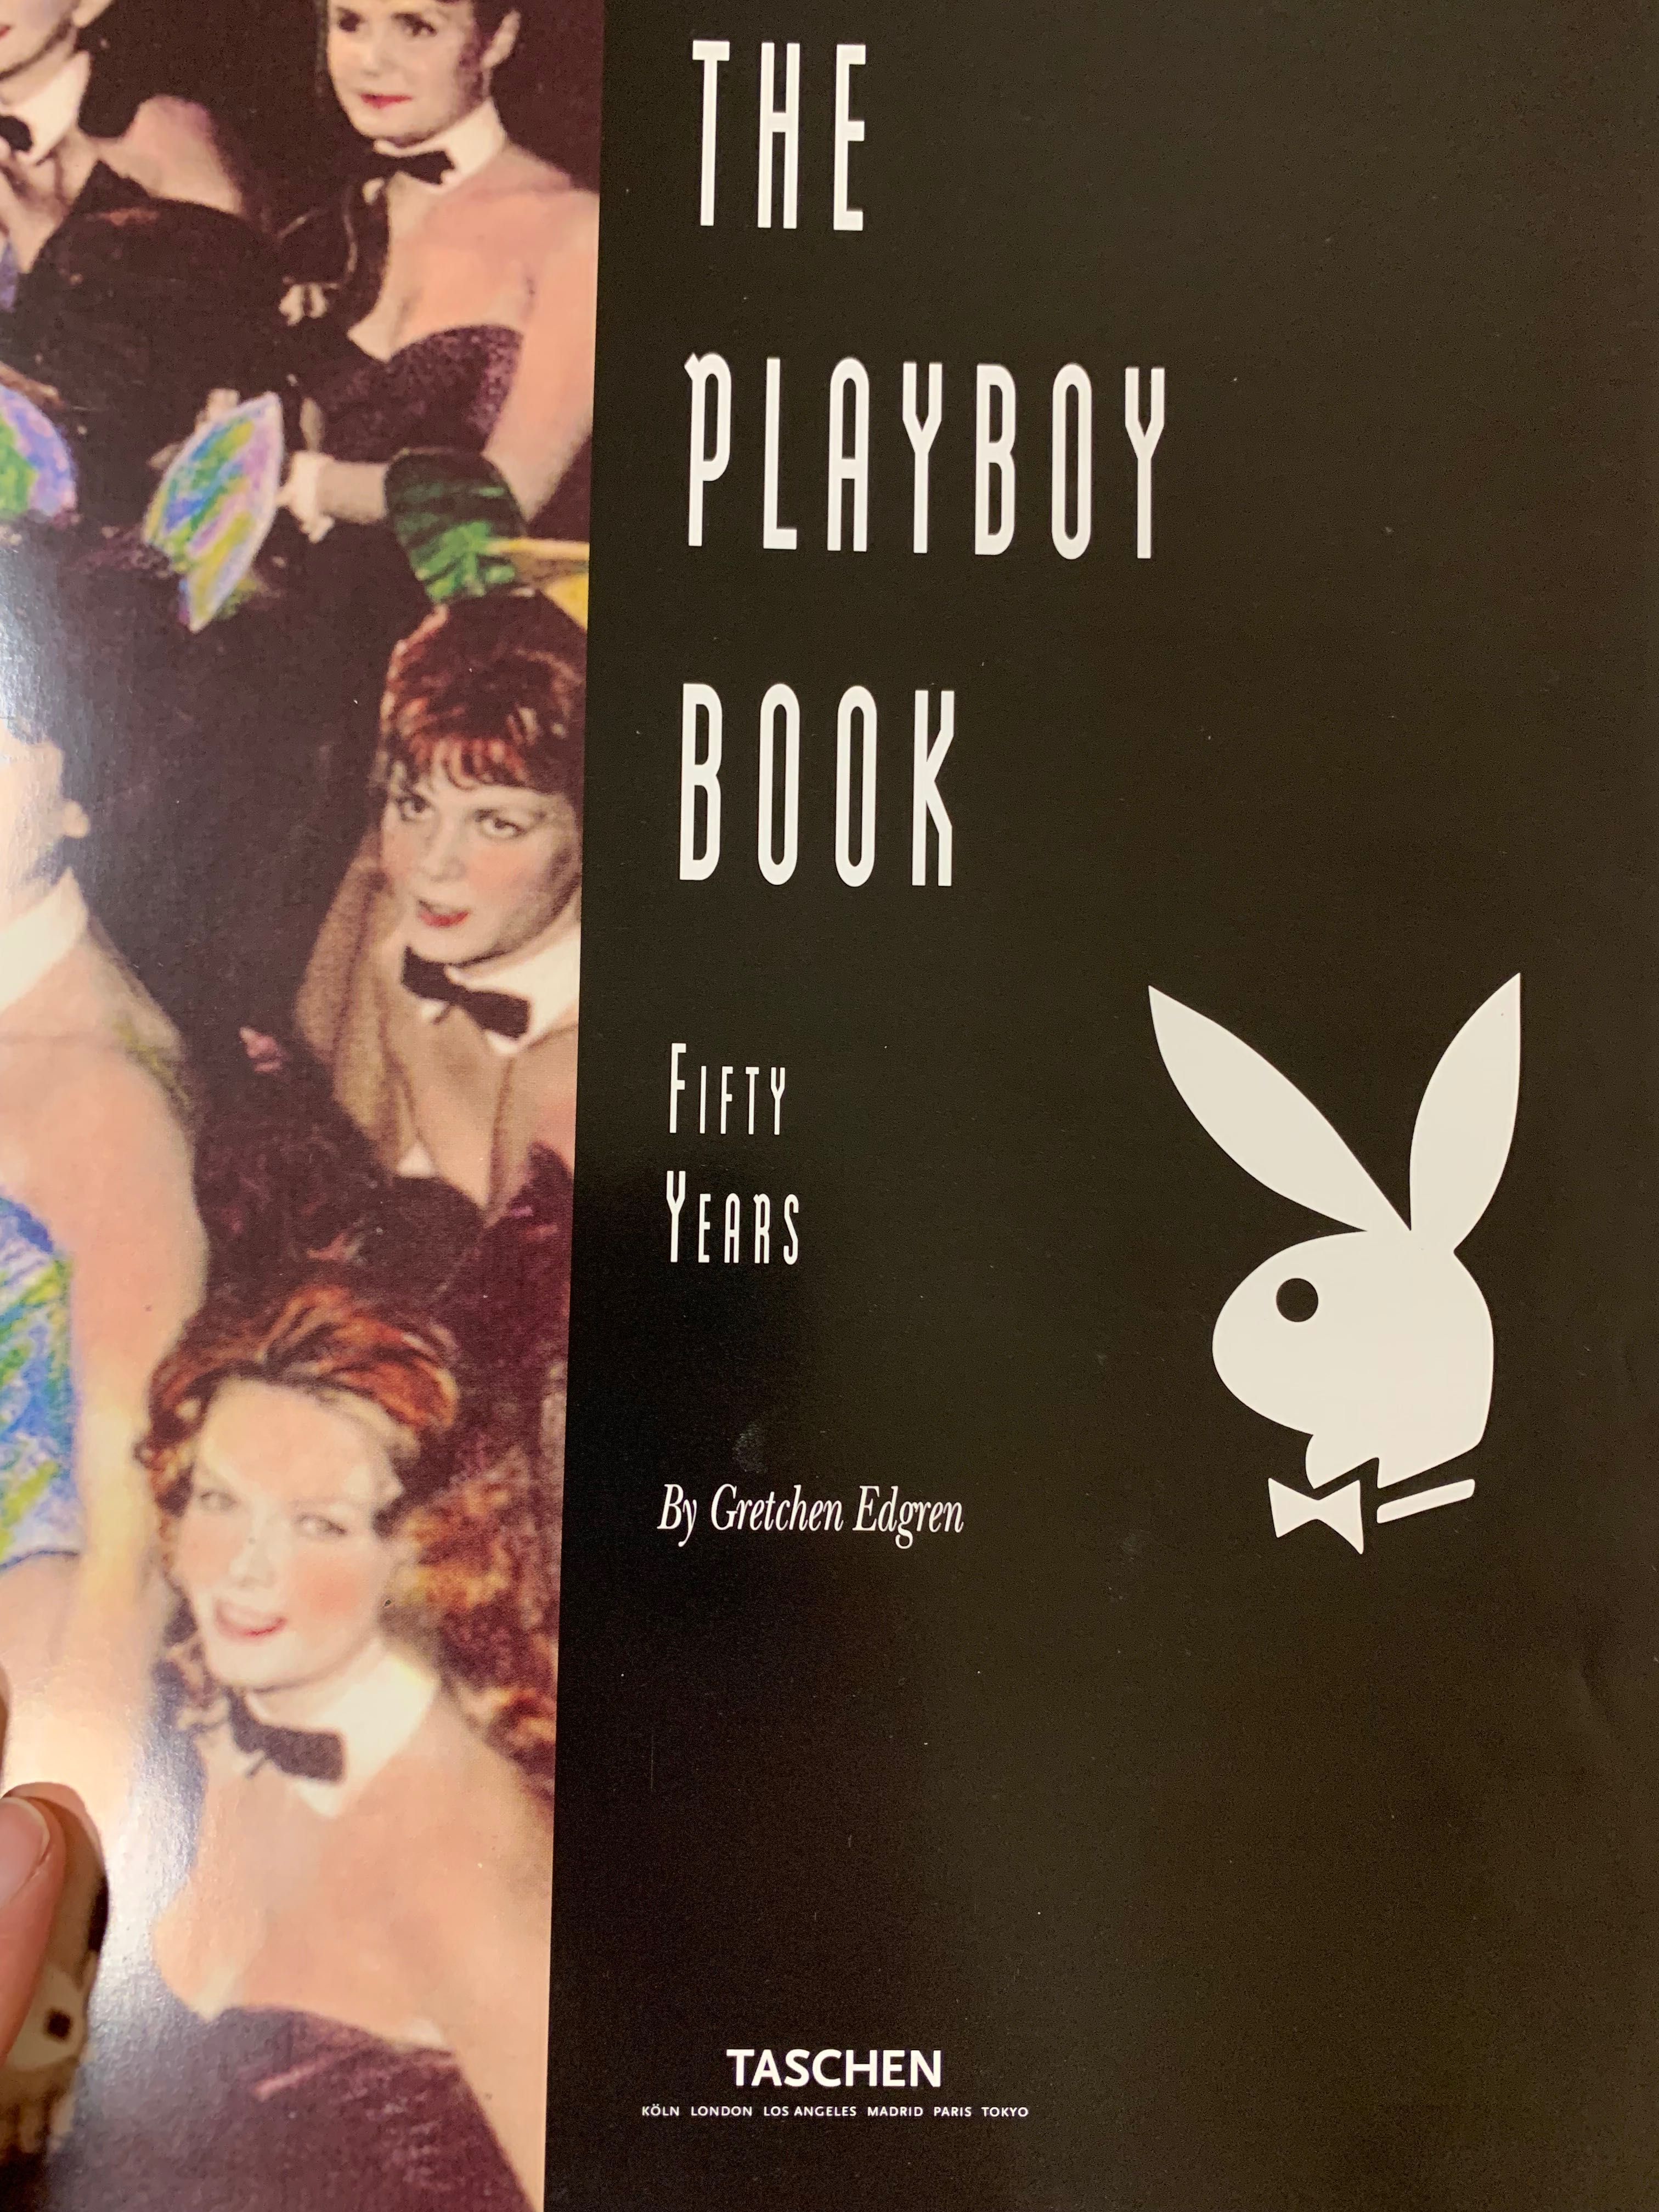 Taschen The playboy book- 50 years